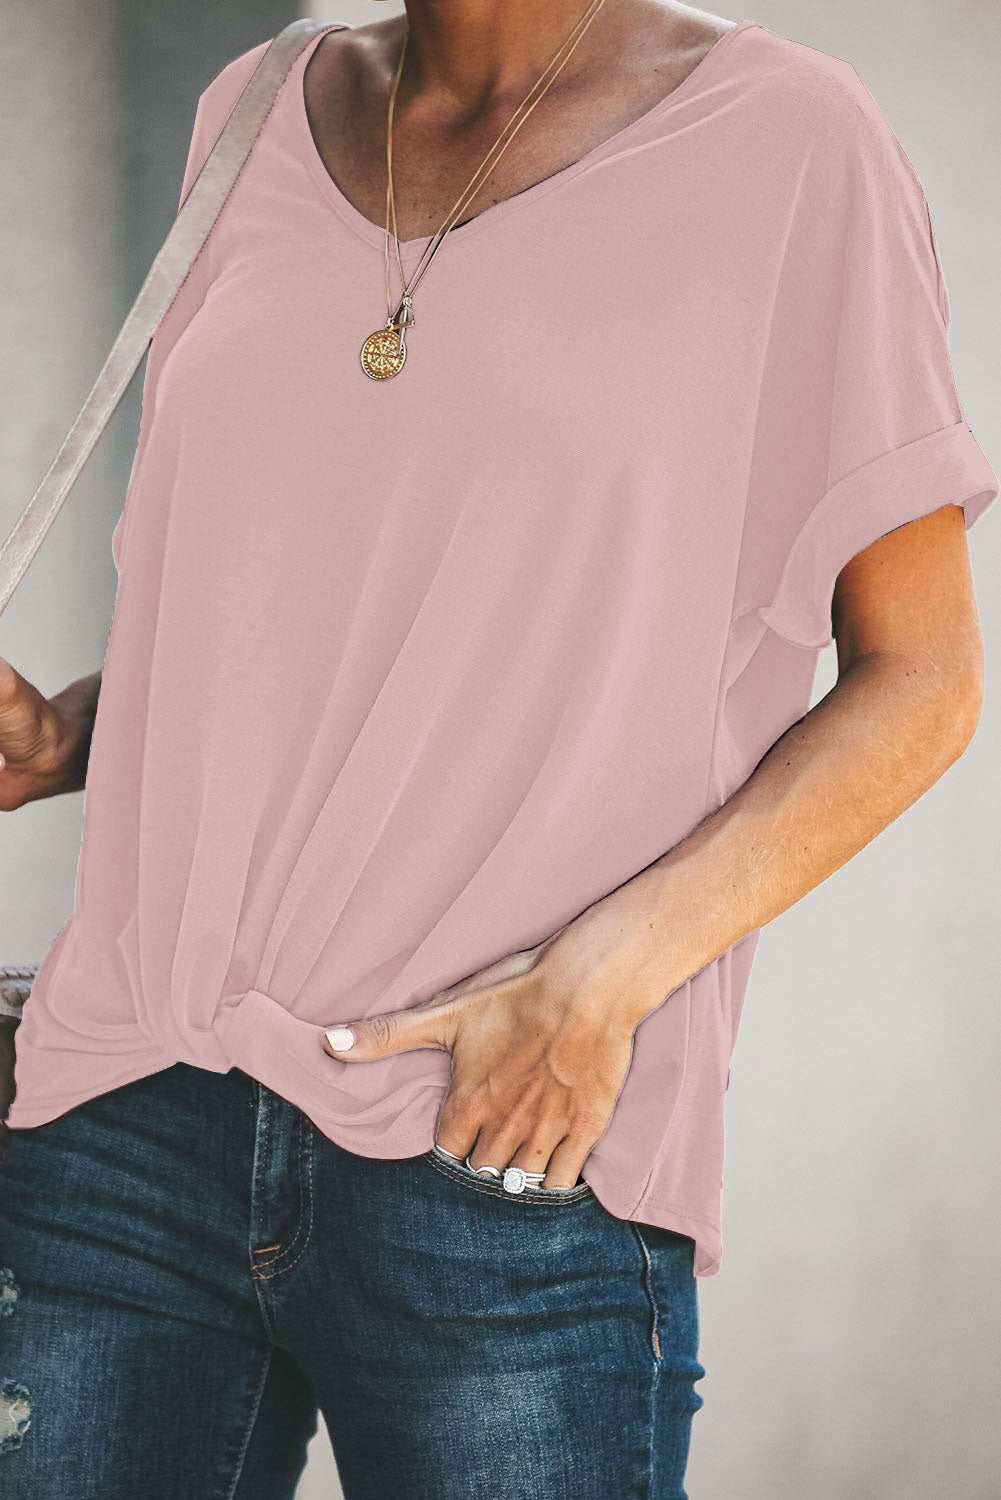 Trendsi Cupid Beauty Supplies Pink / S Woman's T-Shirts Plain Twist T-Shirt